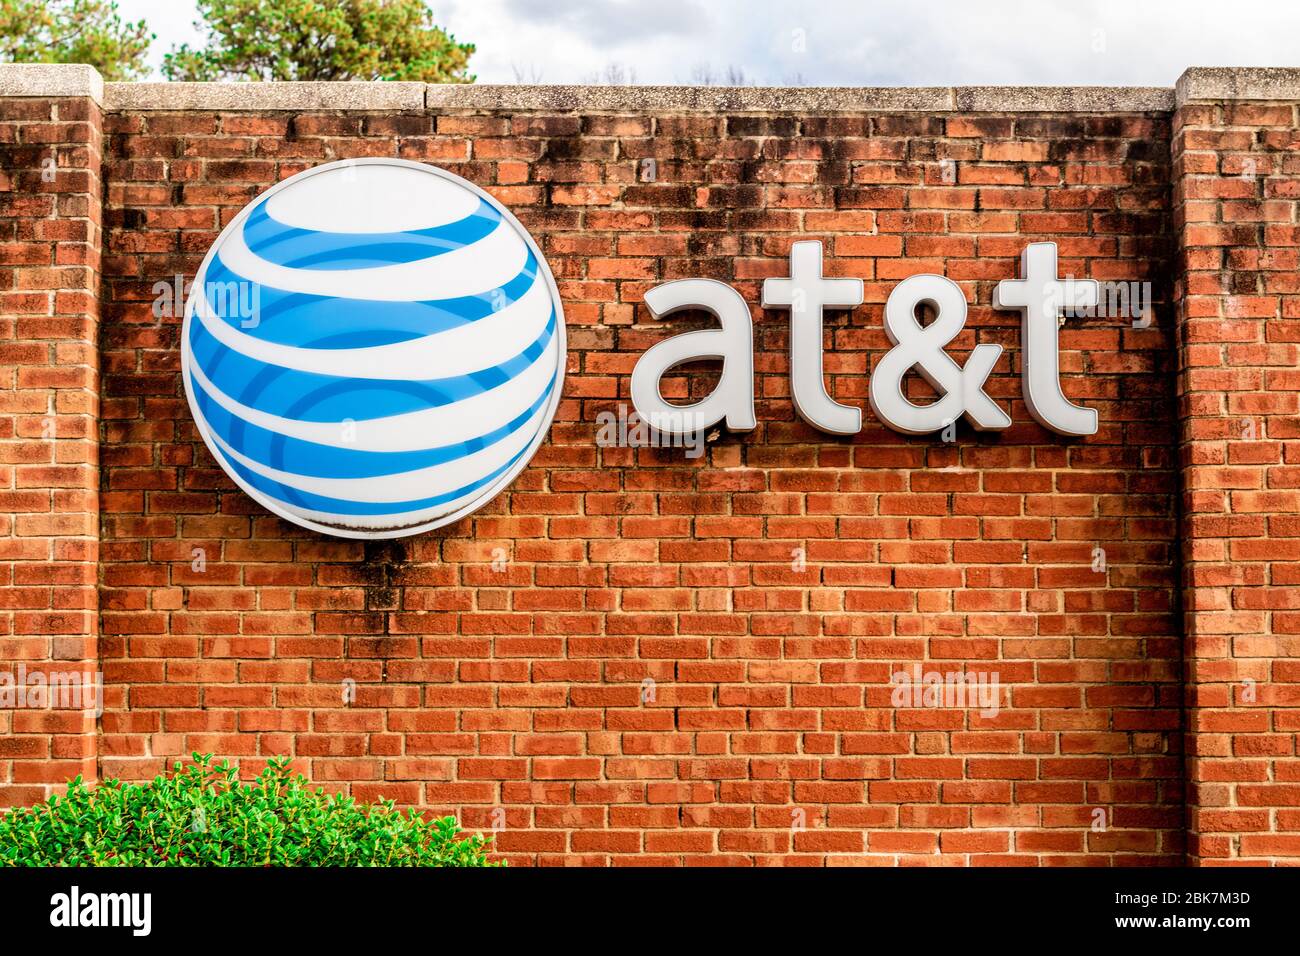 Charlotte, NC/USA - 14 dicembre 2019: Scatto orizzontale medio del marchio 'AT&T' e logo montato su un muro di mattoni rossi con alberi, auto parcheggiate e tempesta c Foto Stock